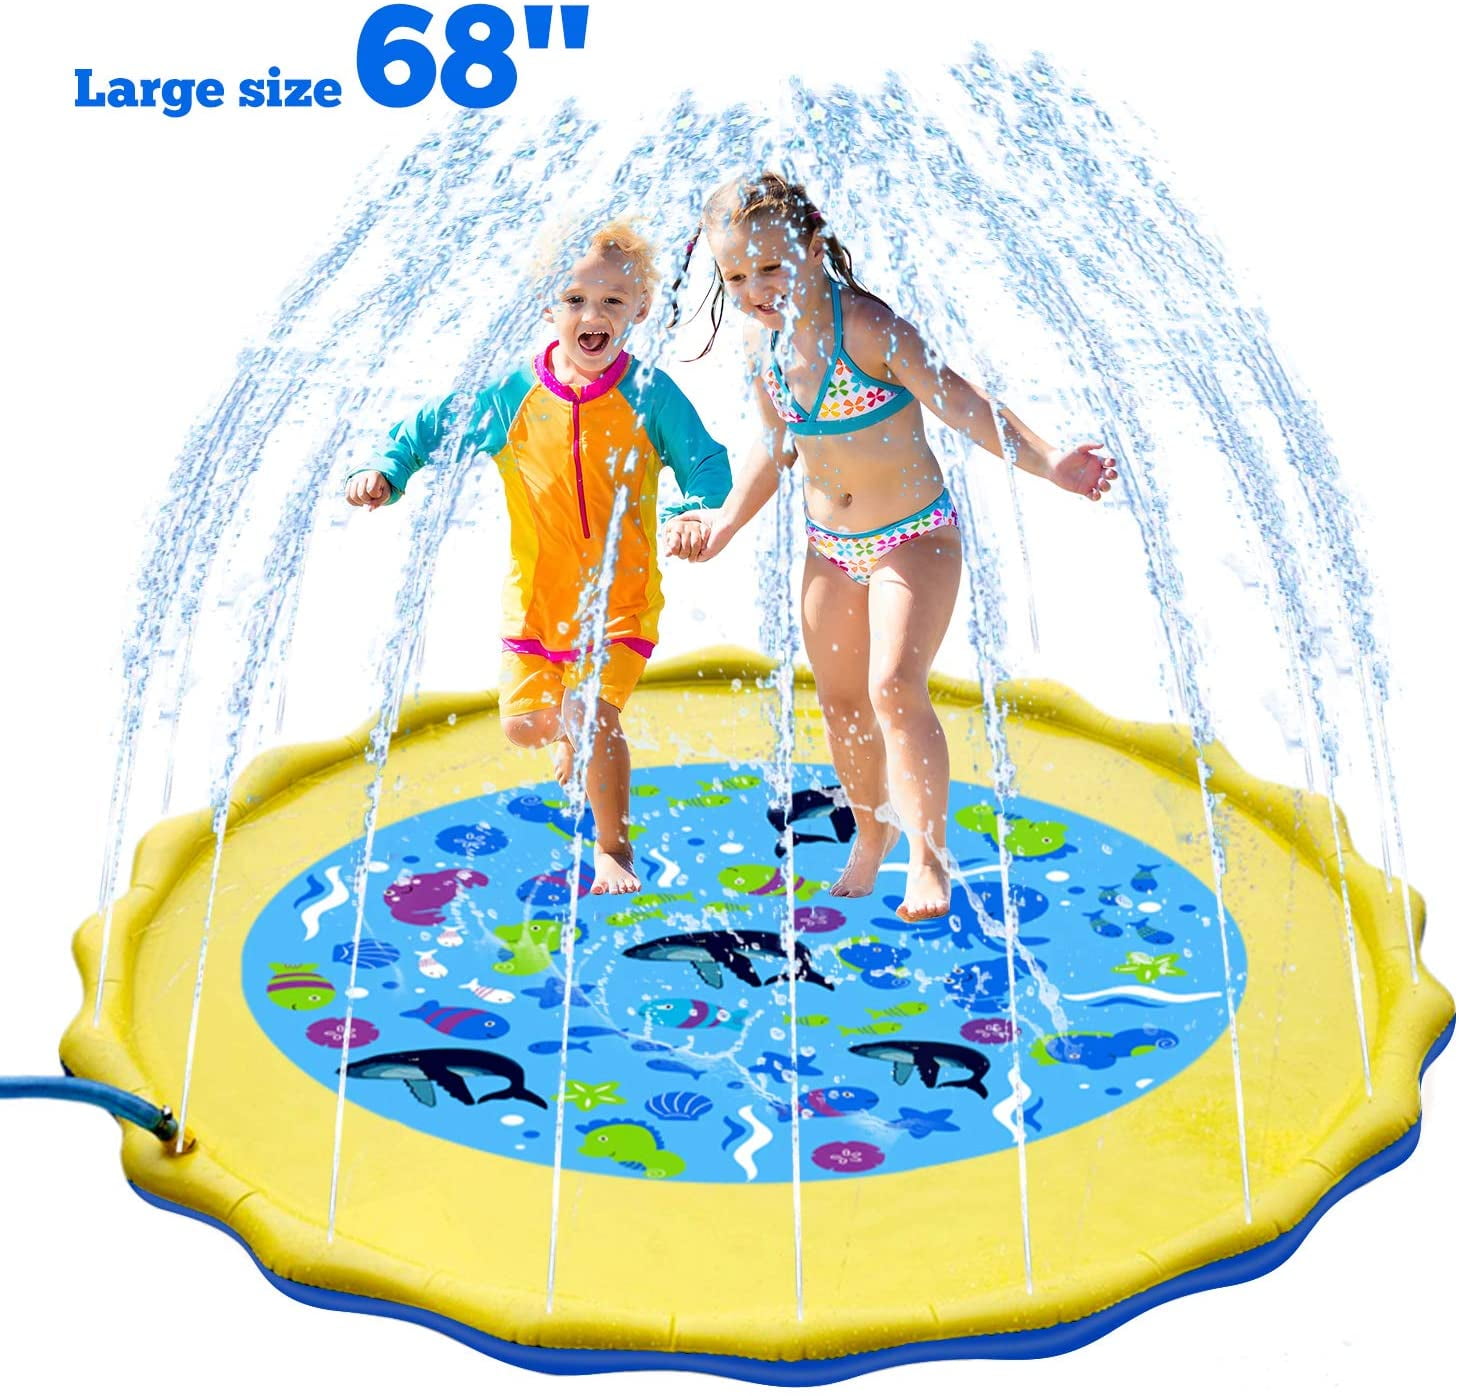 68" Water Sprinkler Details about   Sprinkle  Splash Play Mat Kiddie Outdoor Outside Water P 